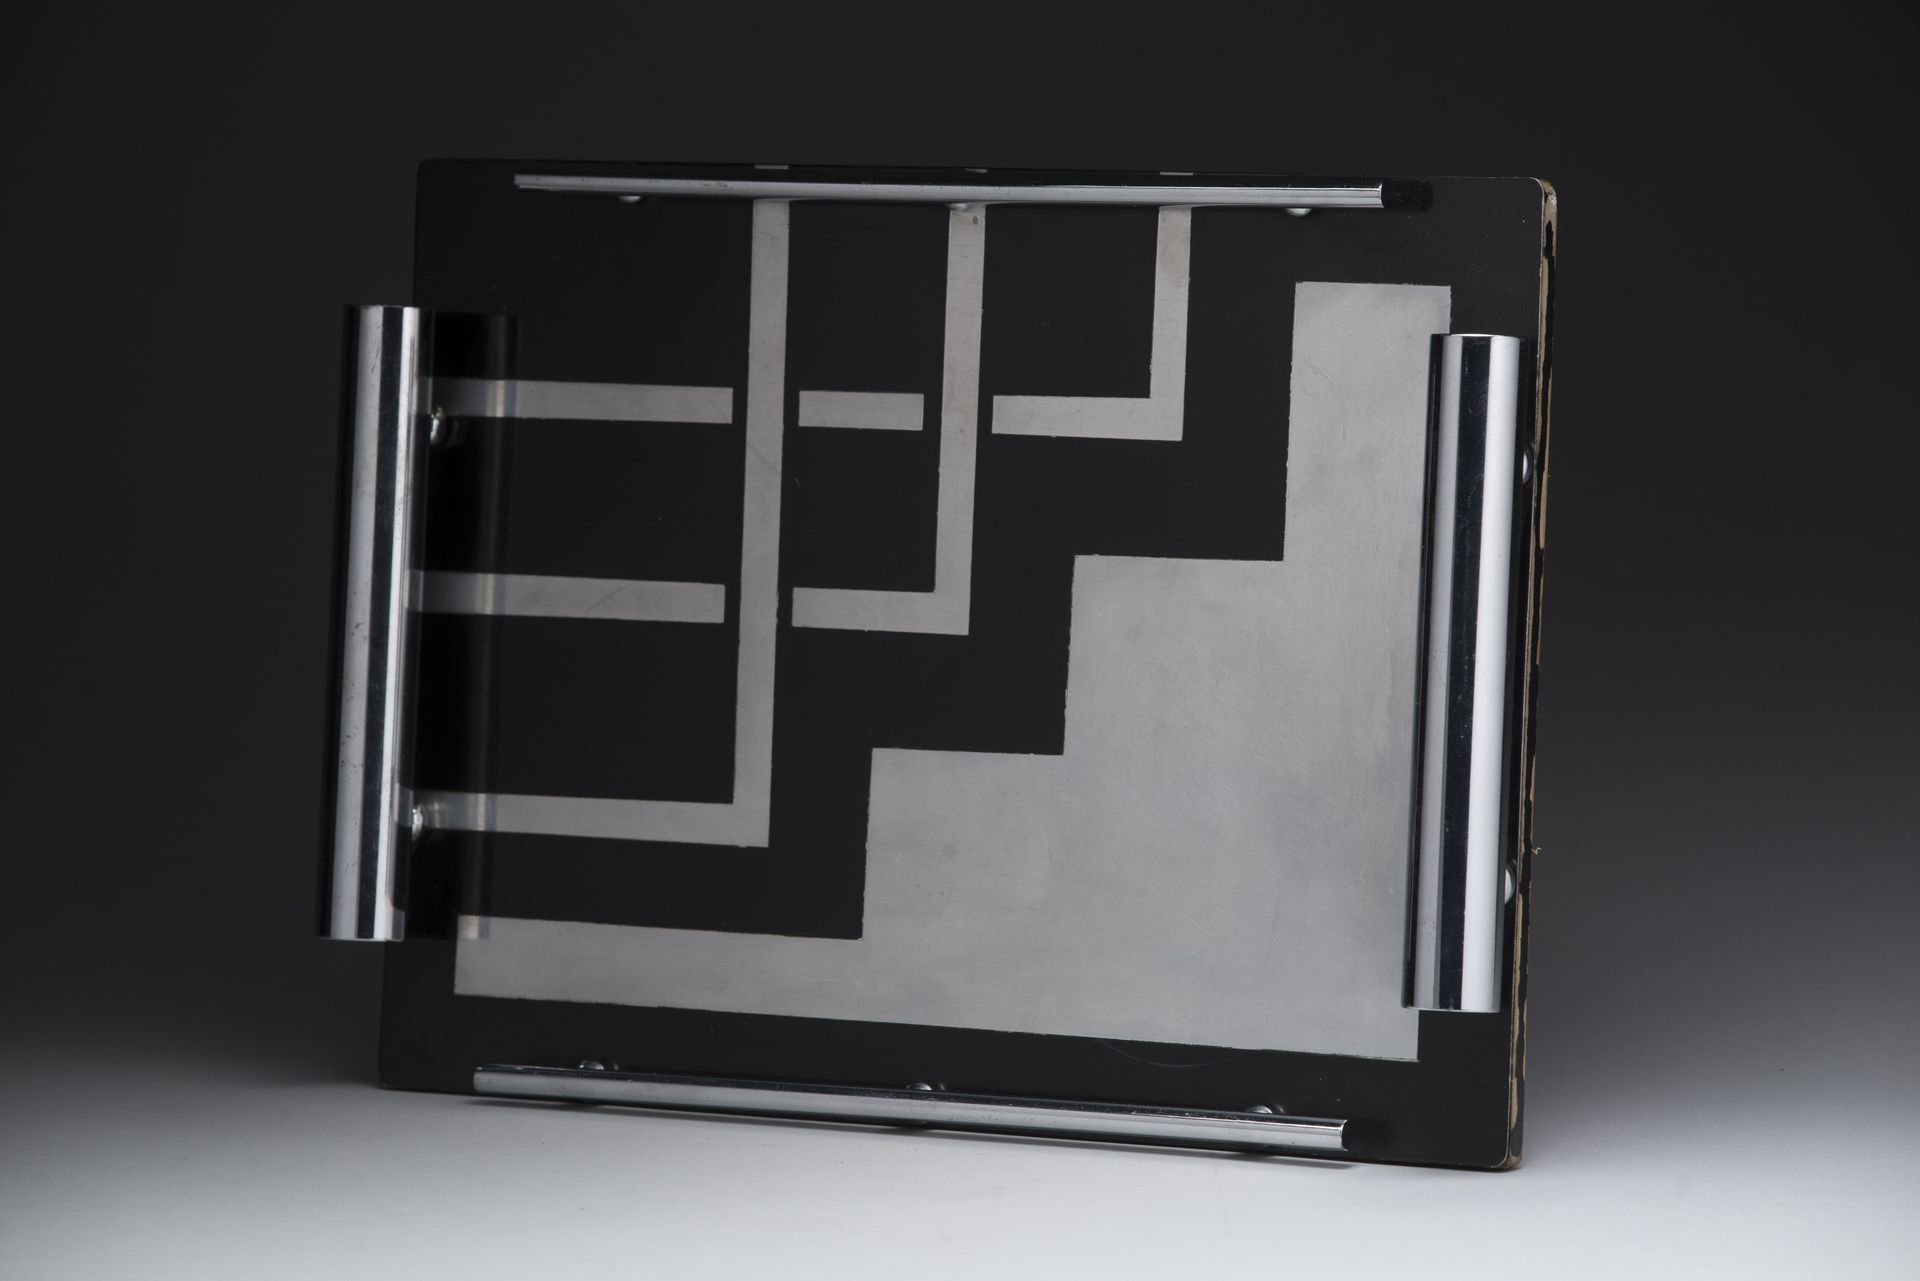 Null De estilo Bauhaus. 
Tapa rectangular de madera lacada en negro con incrusta&hellip;